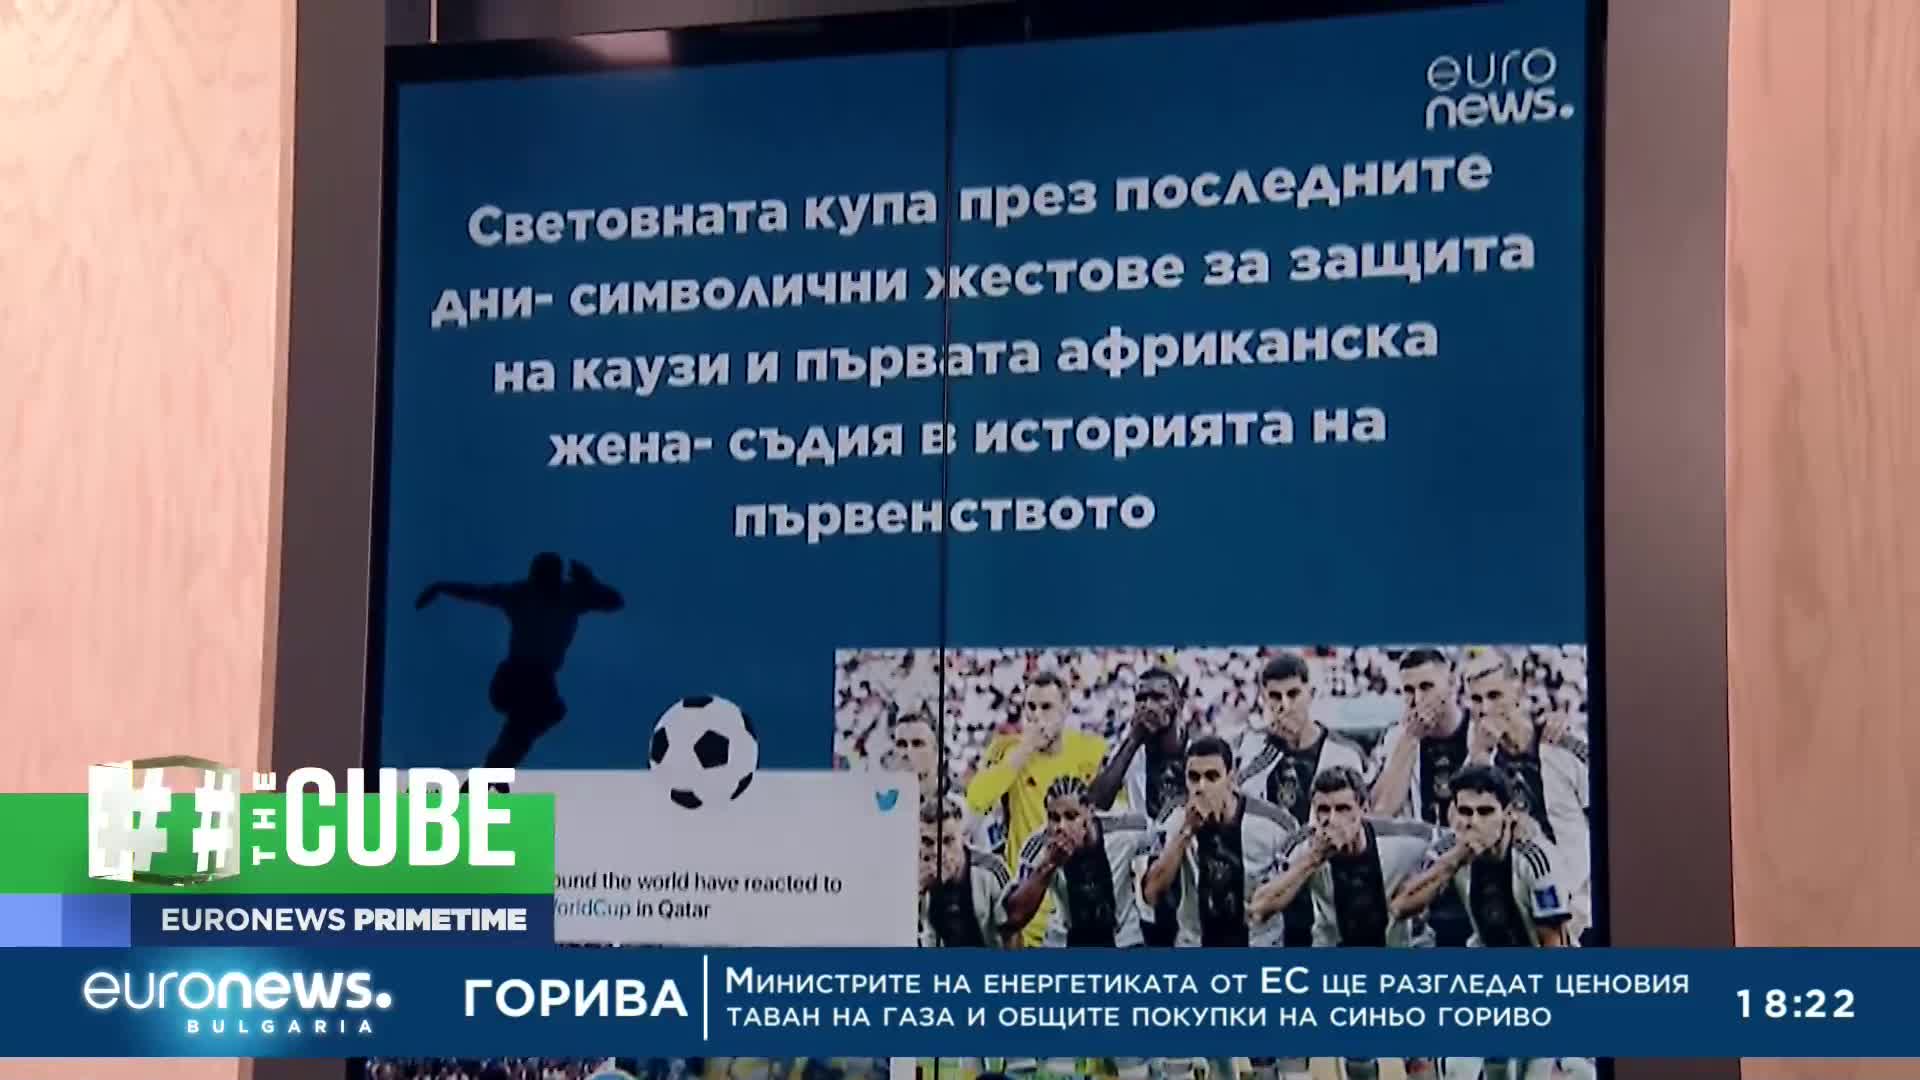 The Cube: Световното първенство по футбол в Катар през призмата на социалните медии